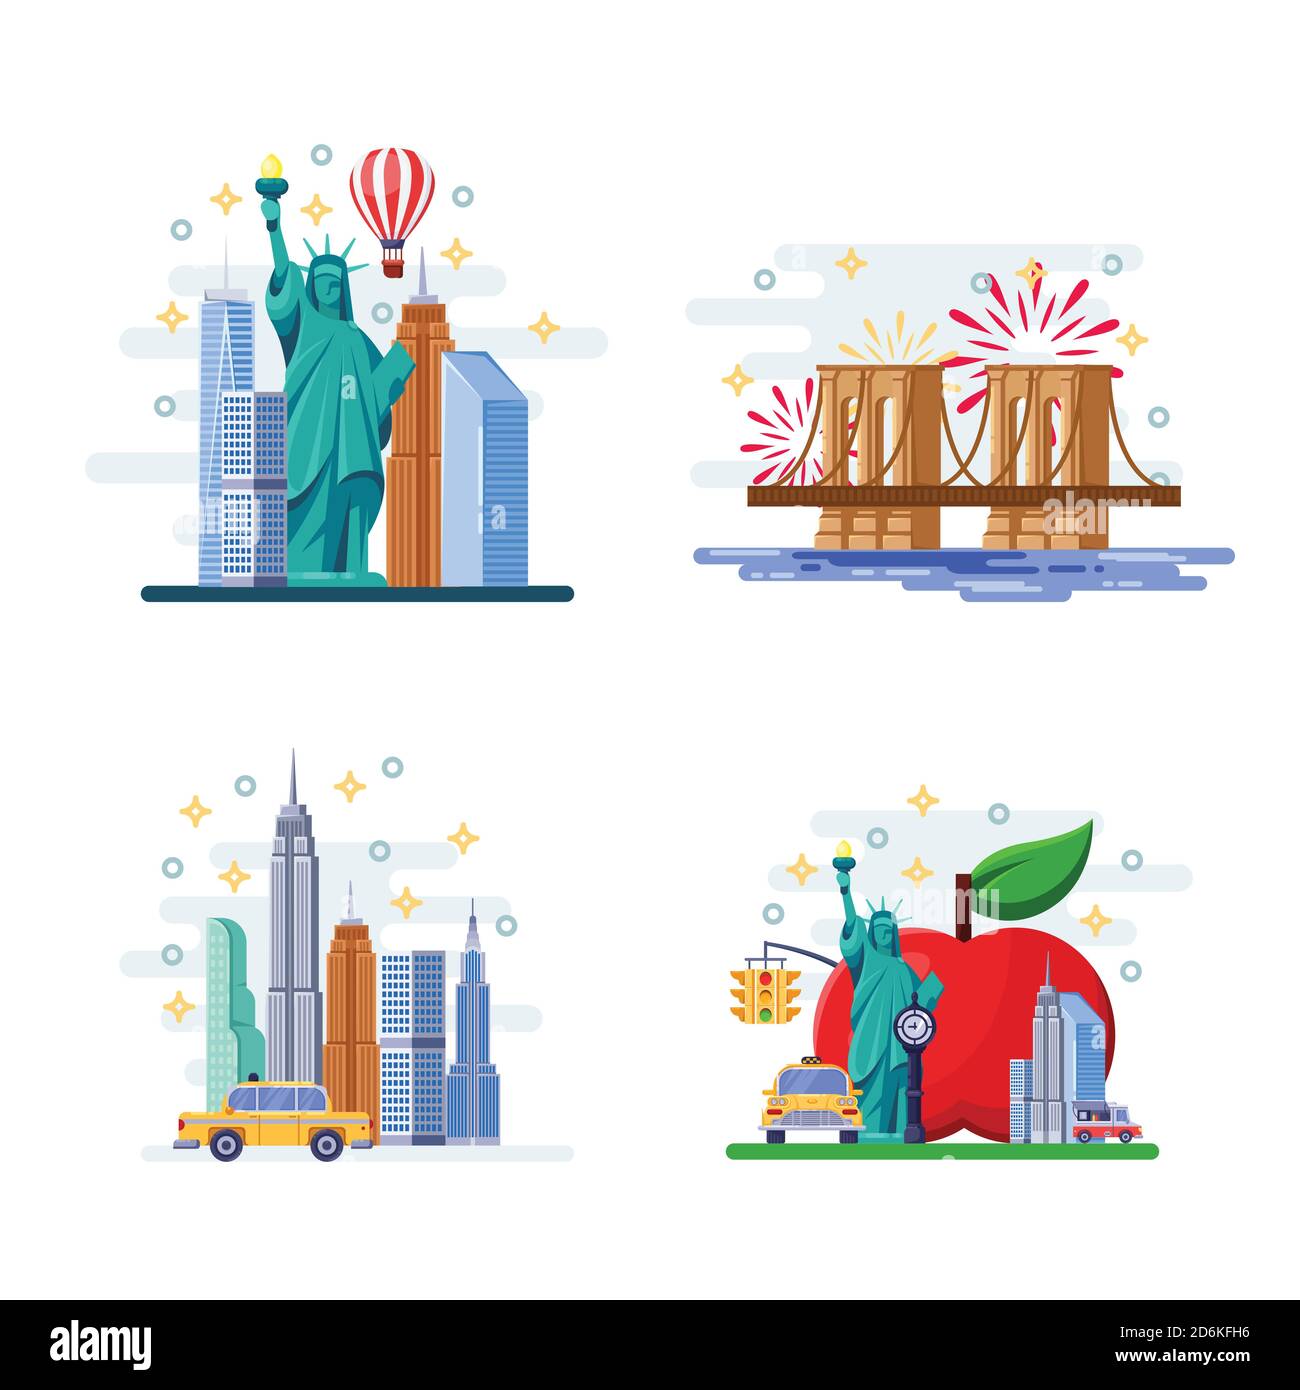 Reise nach New York Vektor-flache Illustration. Stadtsymbole, Wahrzeichen und berühmte Orte. USA-Ikonen und Designelemente. Stock Vektor